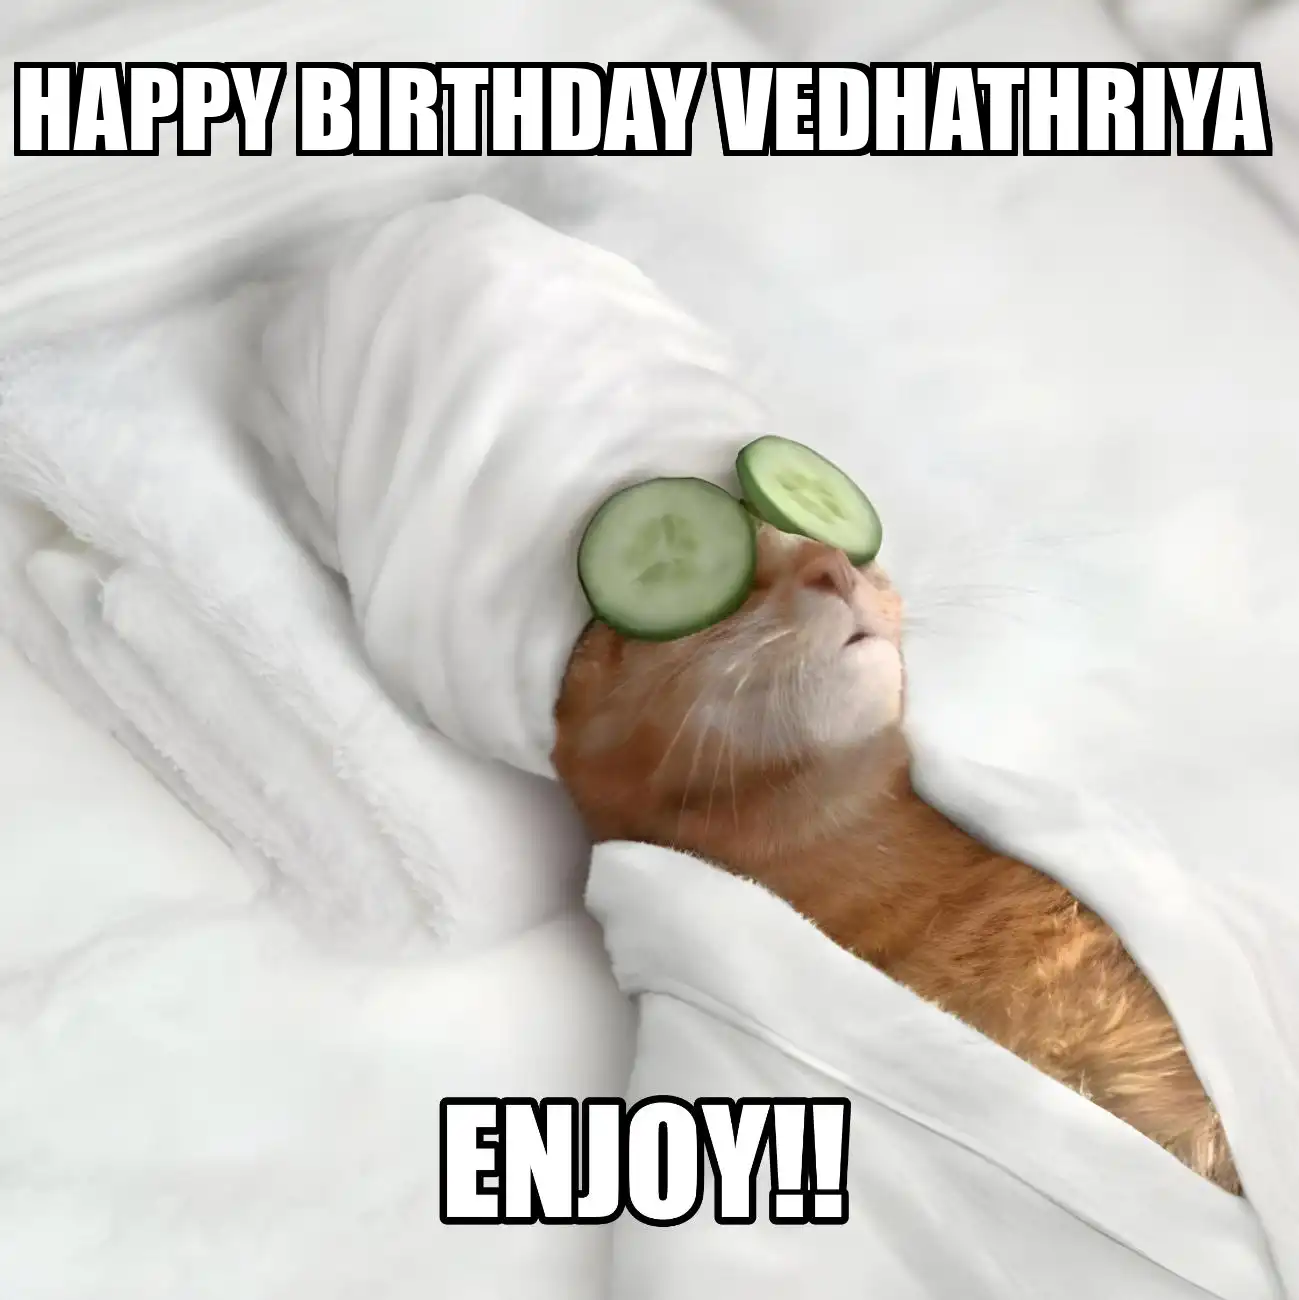 Happy Birthday Vedhathriya Enjoy Cat Meme